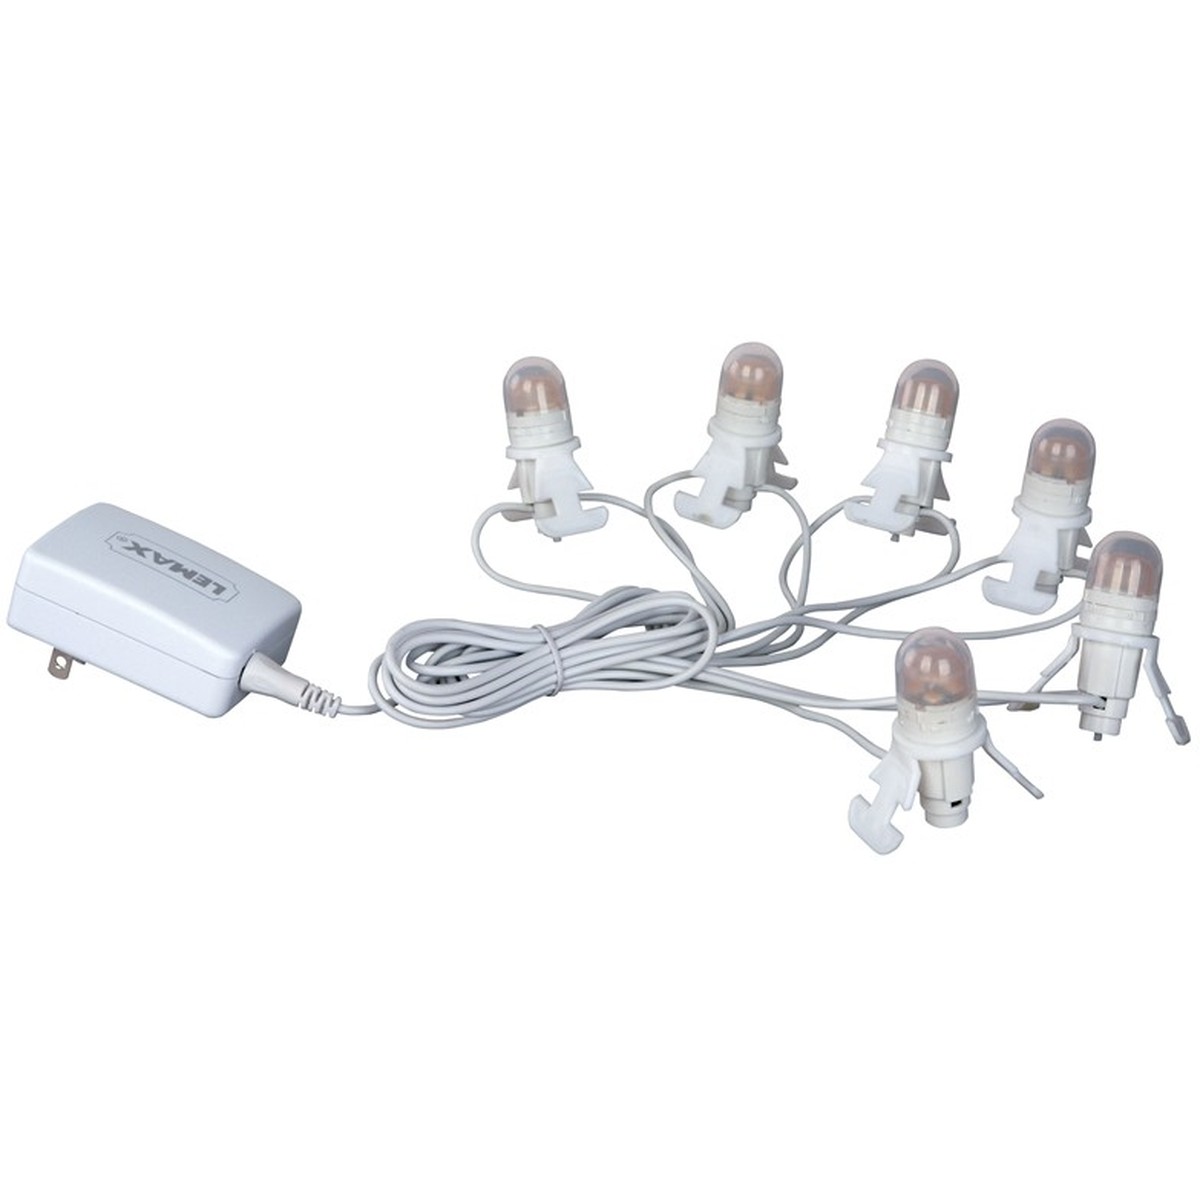  Lemax Lampes LED 6 ampoules avec transformateur 4.5V  